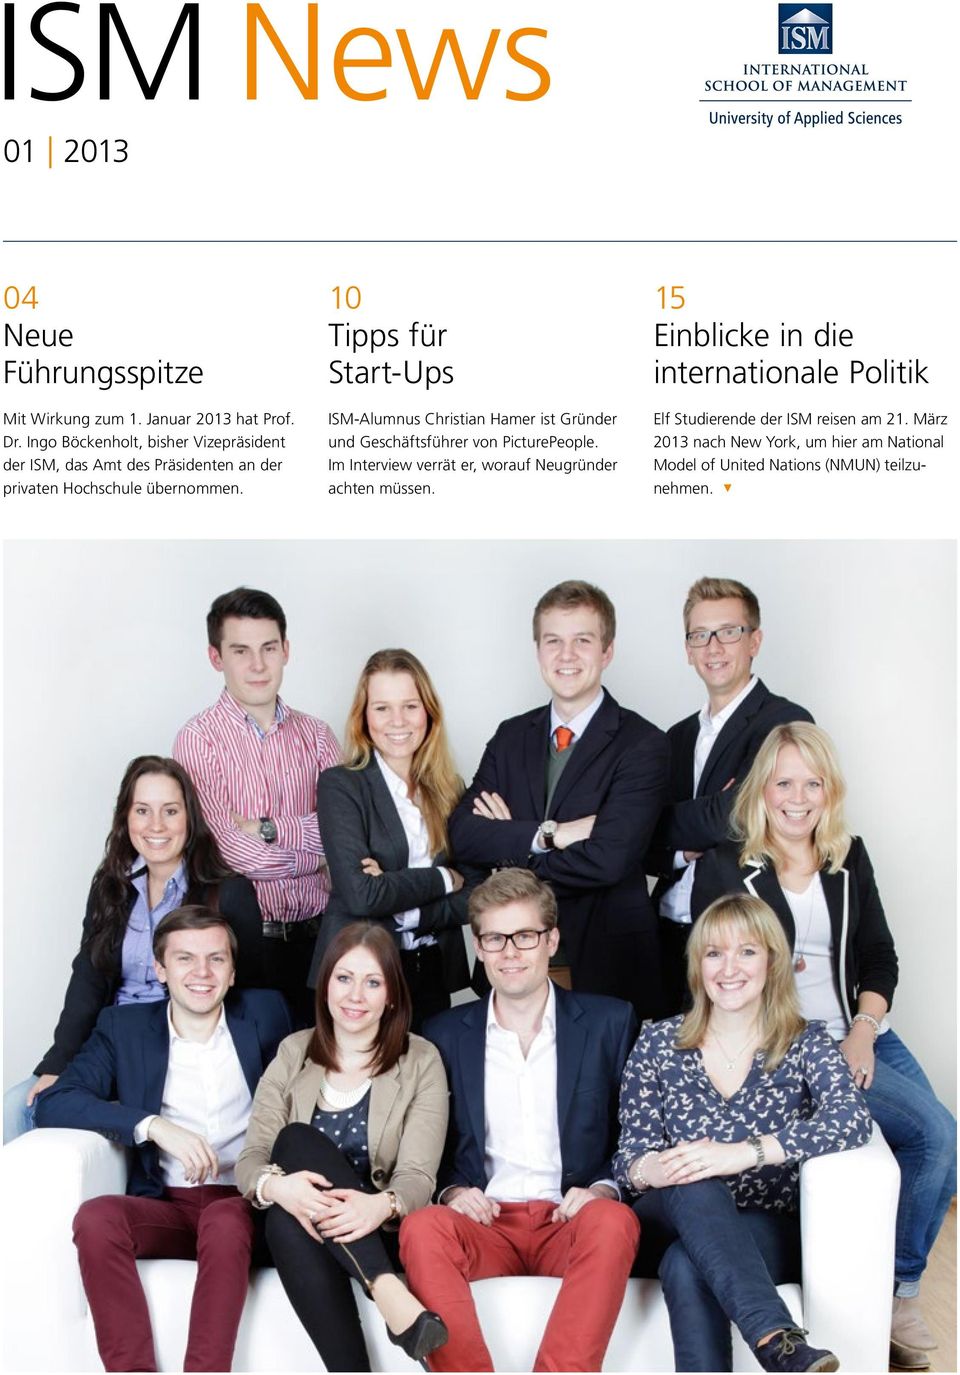 10 Tipps für Start-Ups ISM-Alumnus Christian Hamer ist Gründer und Geschäftsführer von PicturePeople.